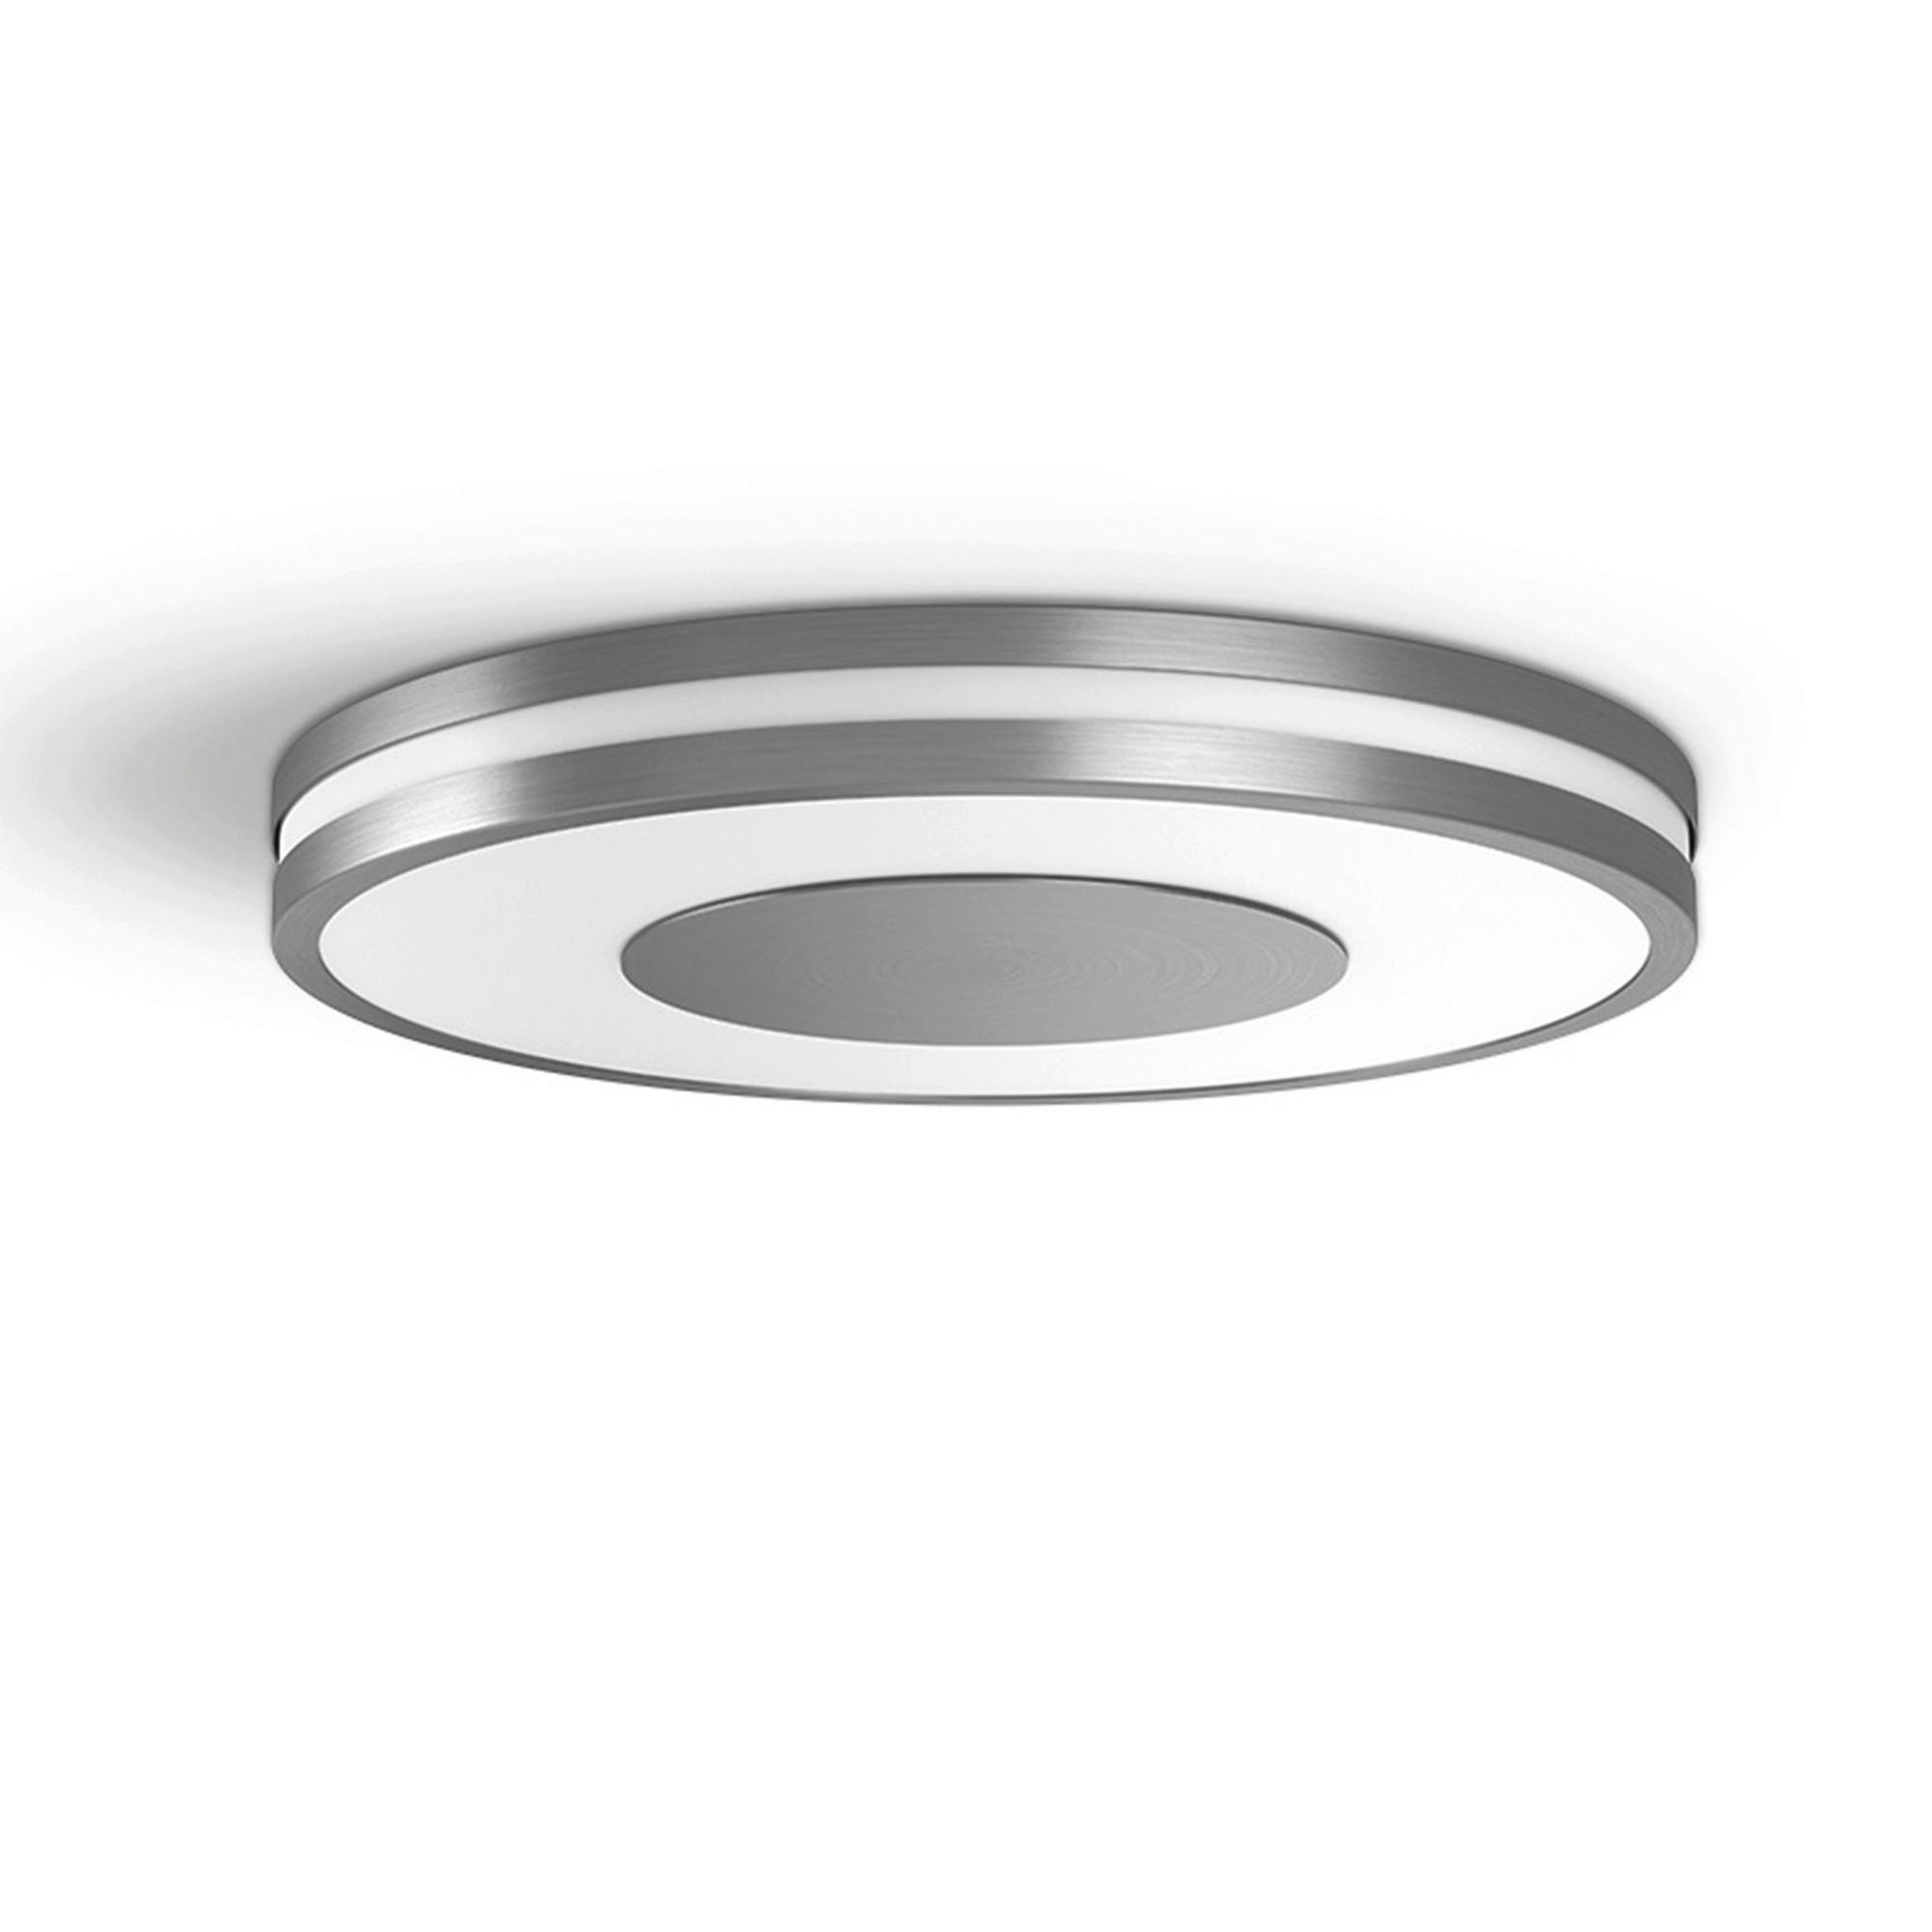 LED-DECKENLEUCHTE White Ambiance Being 34,8/5,1 cm   - Silberfarben, Design, Metall (34,8/5,1cm) - Philips HUE